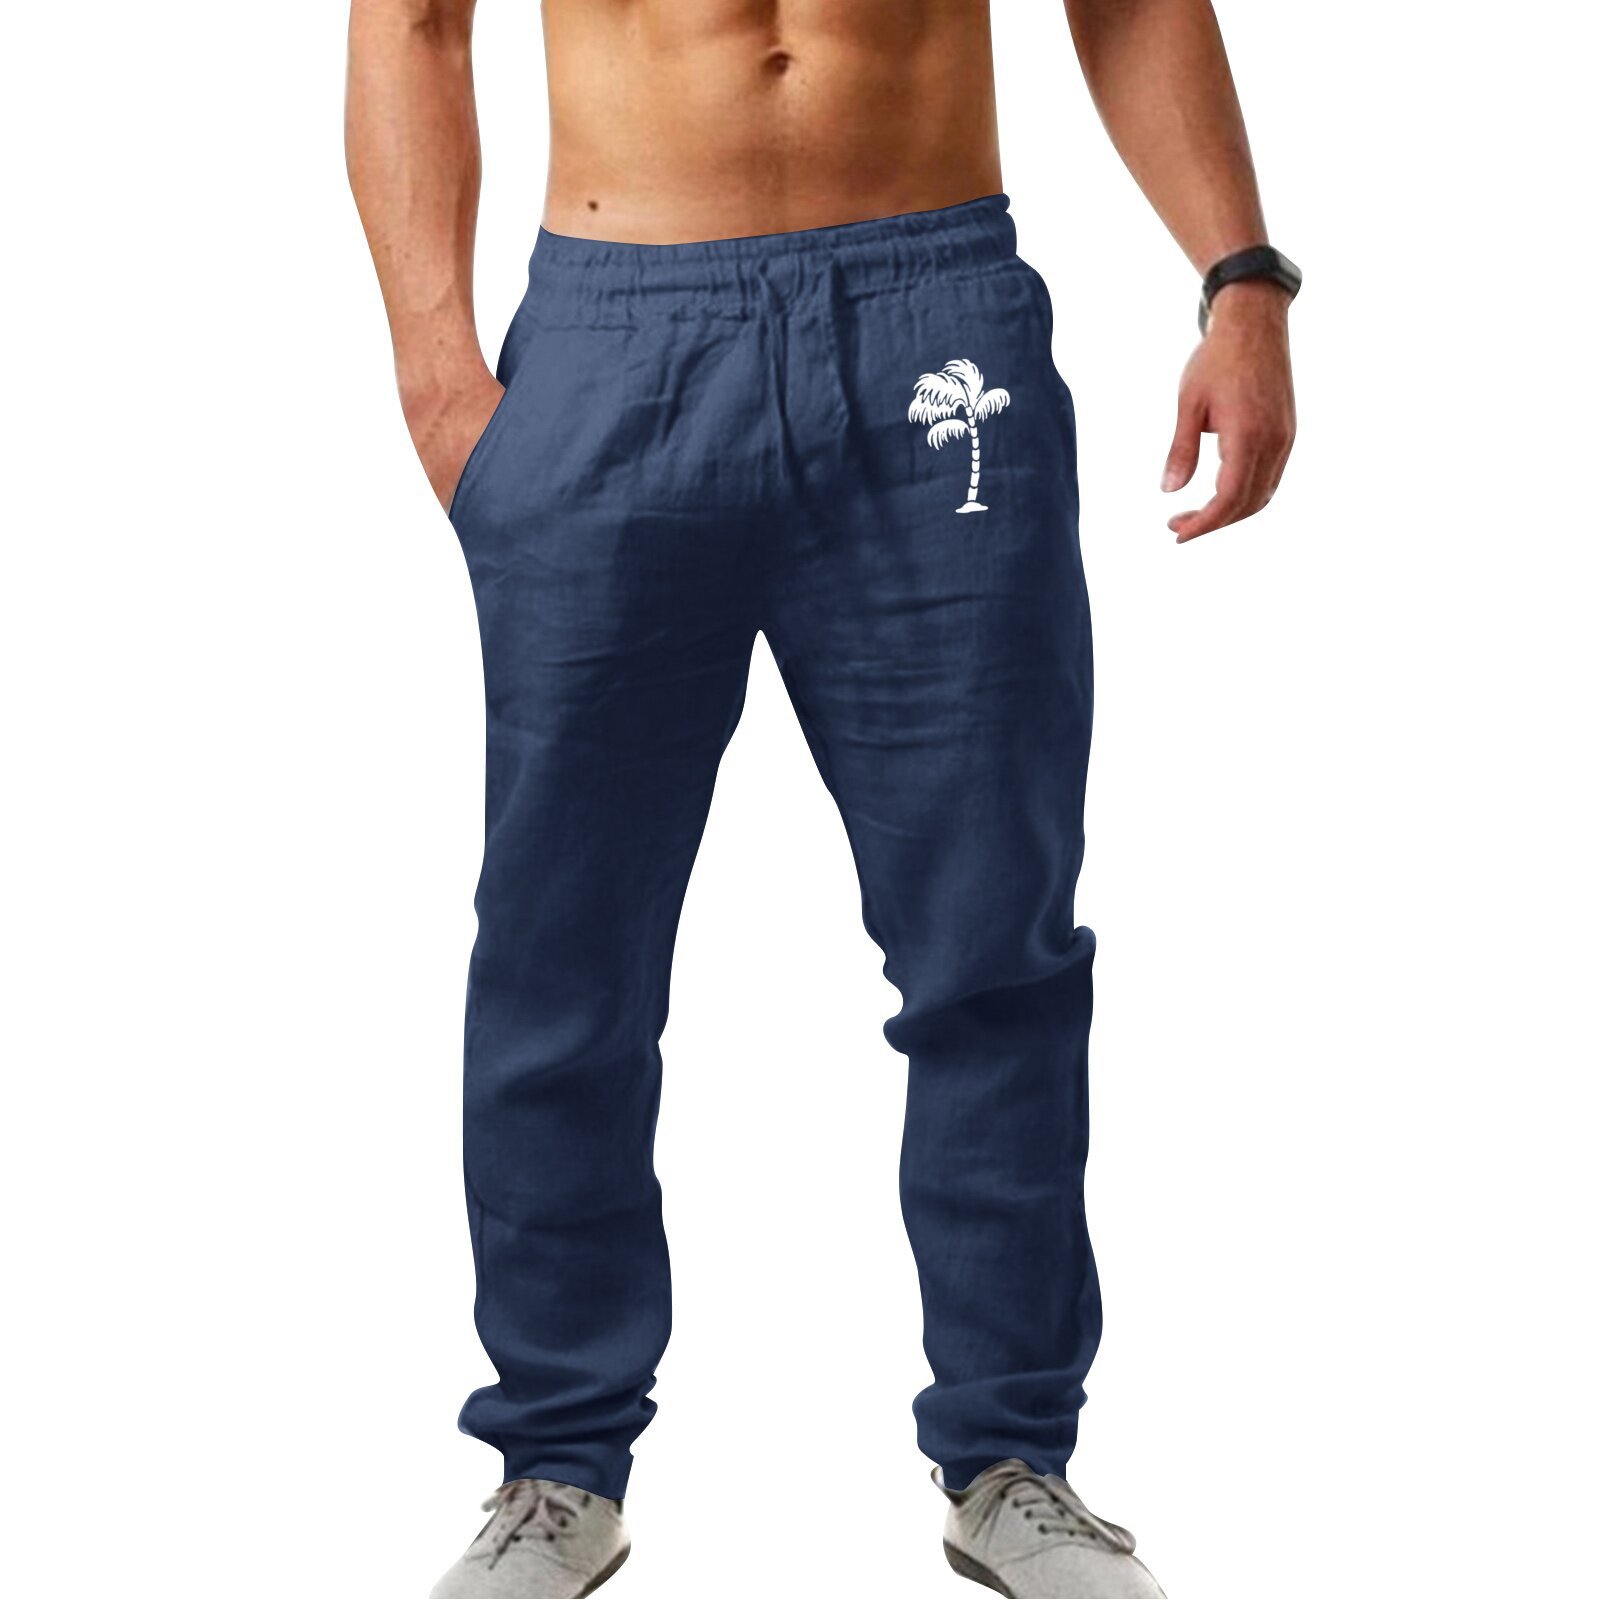 Men's Breathable Cotton Linen Loose Casual Sports Pants